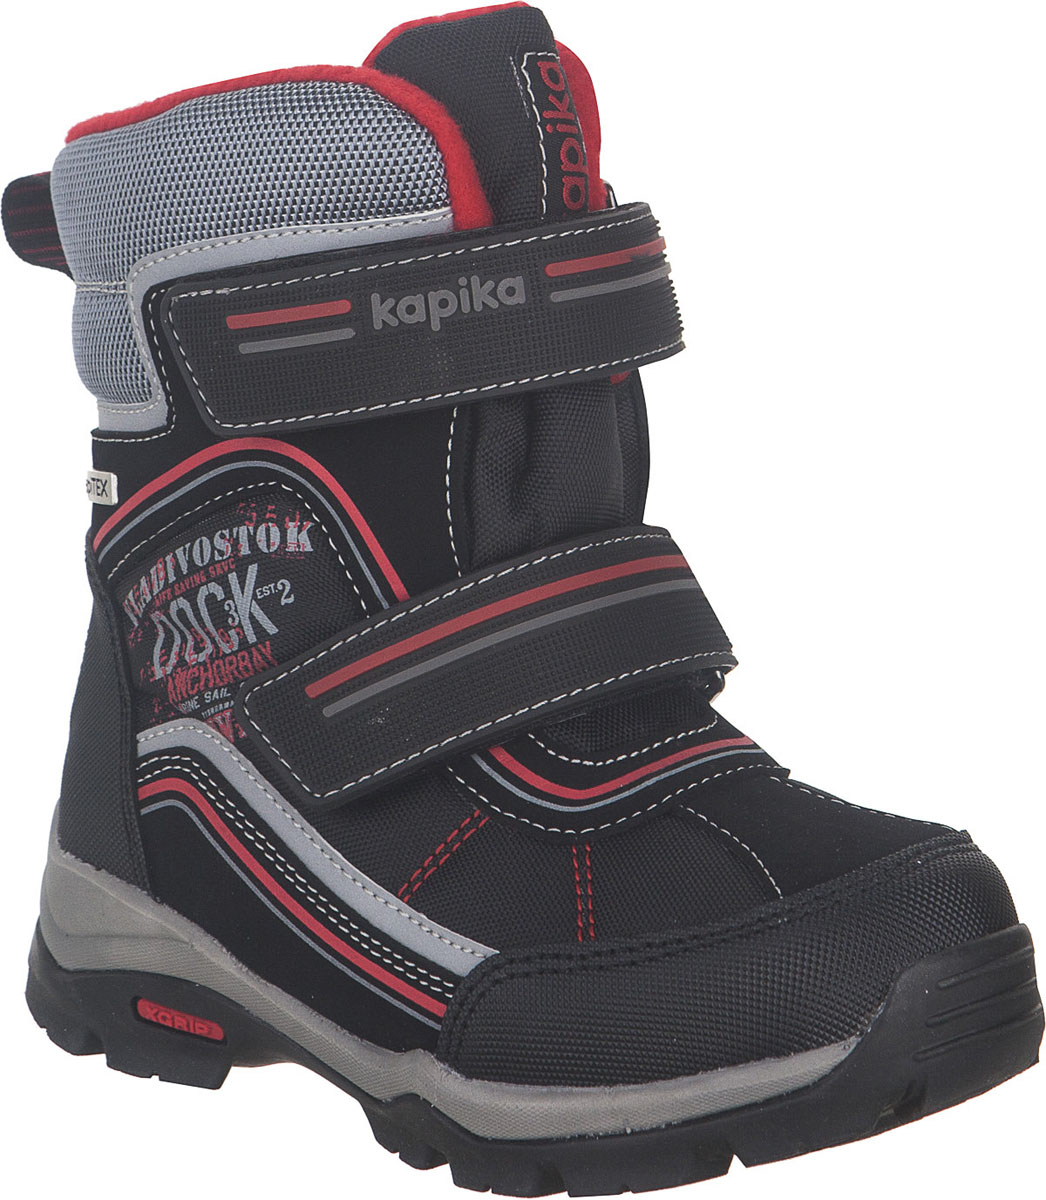 Ботинки для мальчика Kapika KapiTEX, цвет: черный, красный. 42244-1. Размер 32